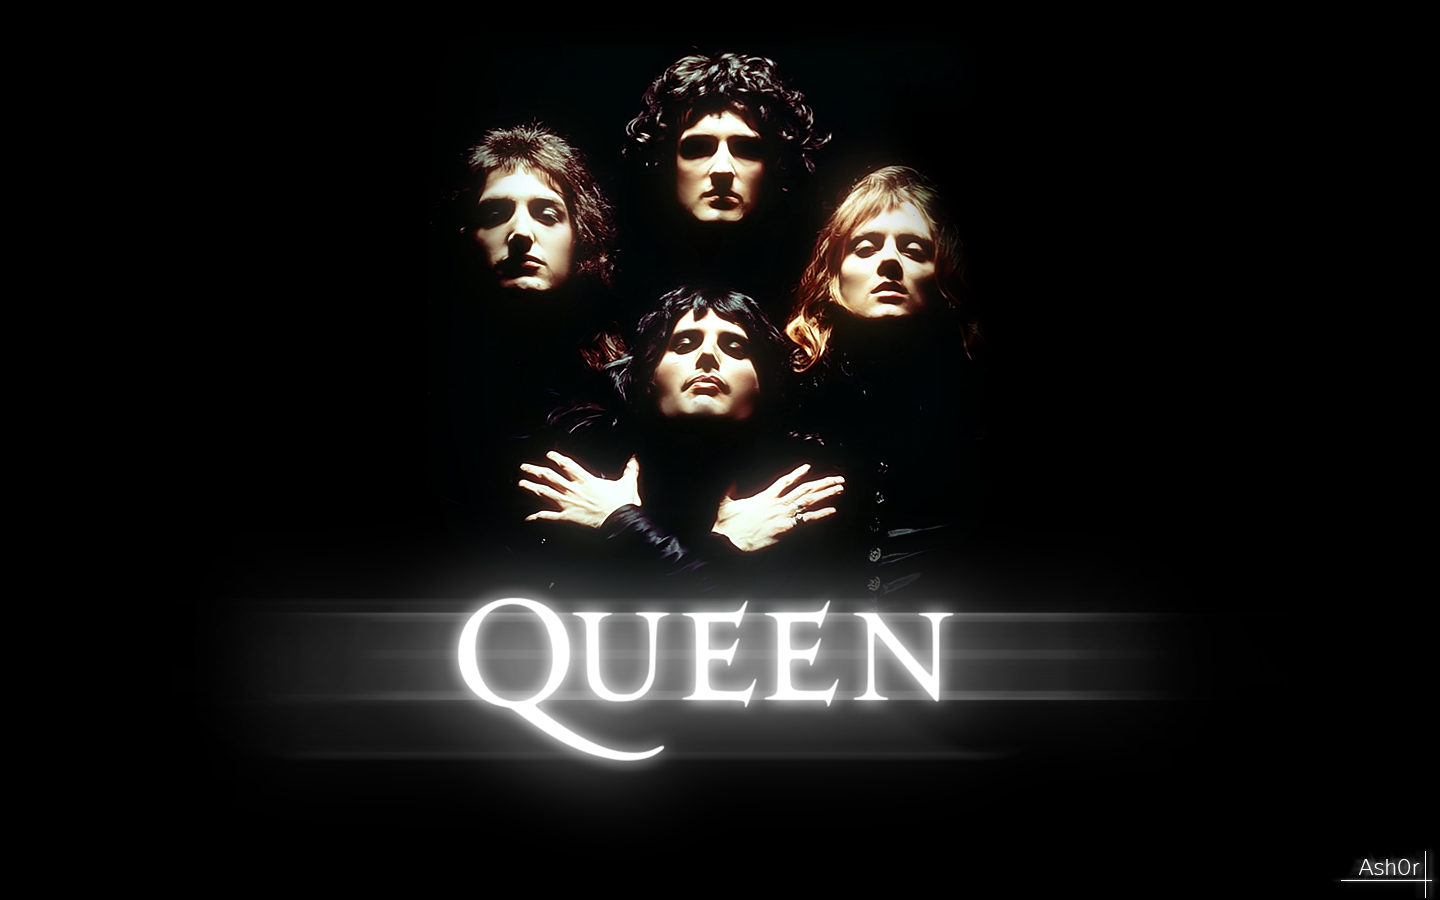 http://2.bp.blogspot.com/-5q1JC7N88vE/UUm9cPsJcUI/AAAAAAAAE1k/TabXPdXQKpI/s1600/queen+band+queen+band.png